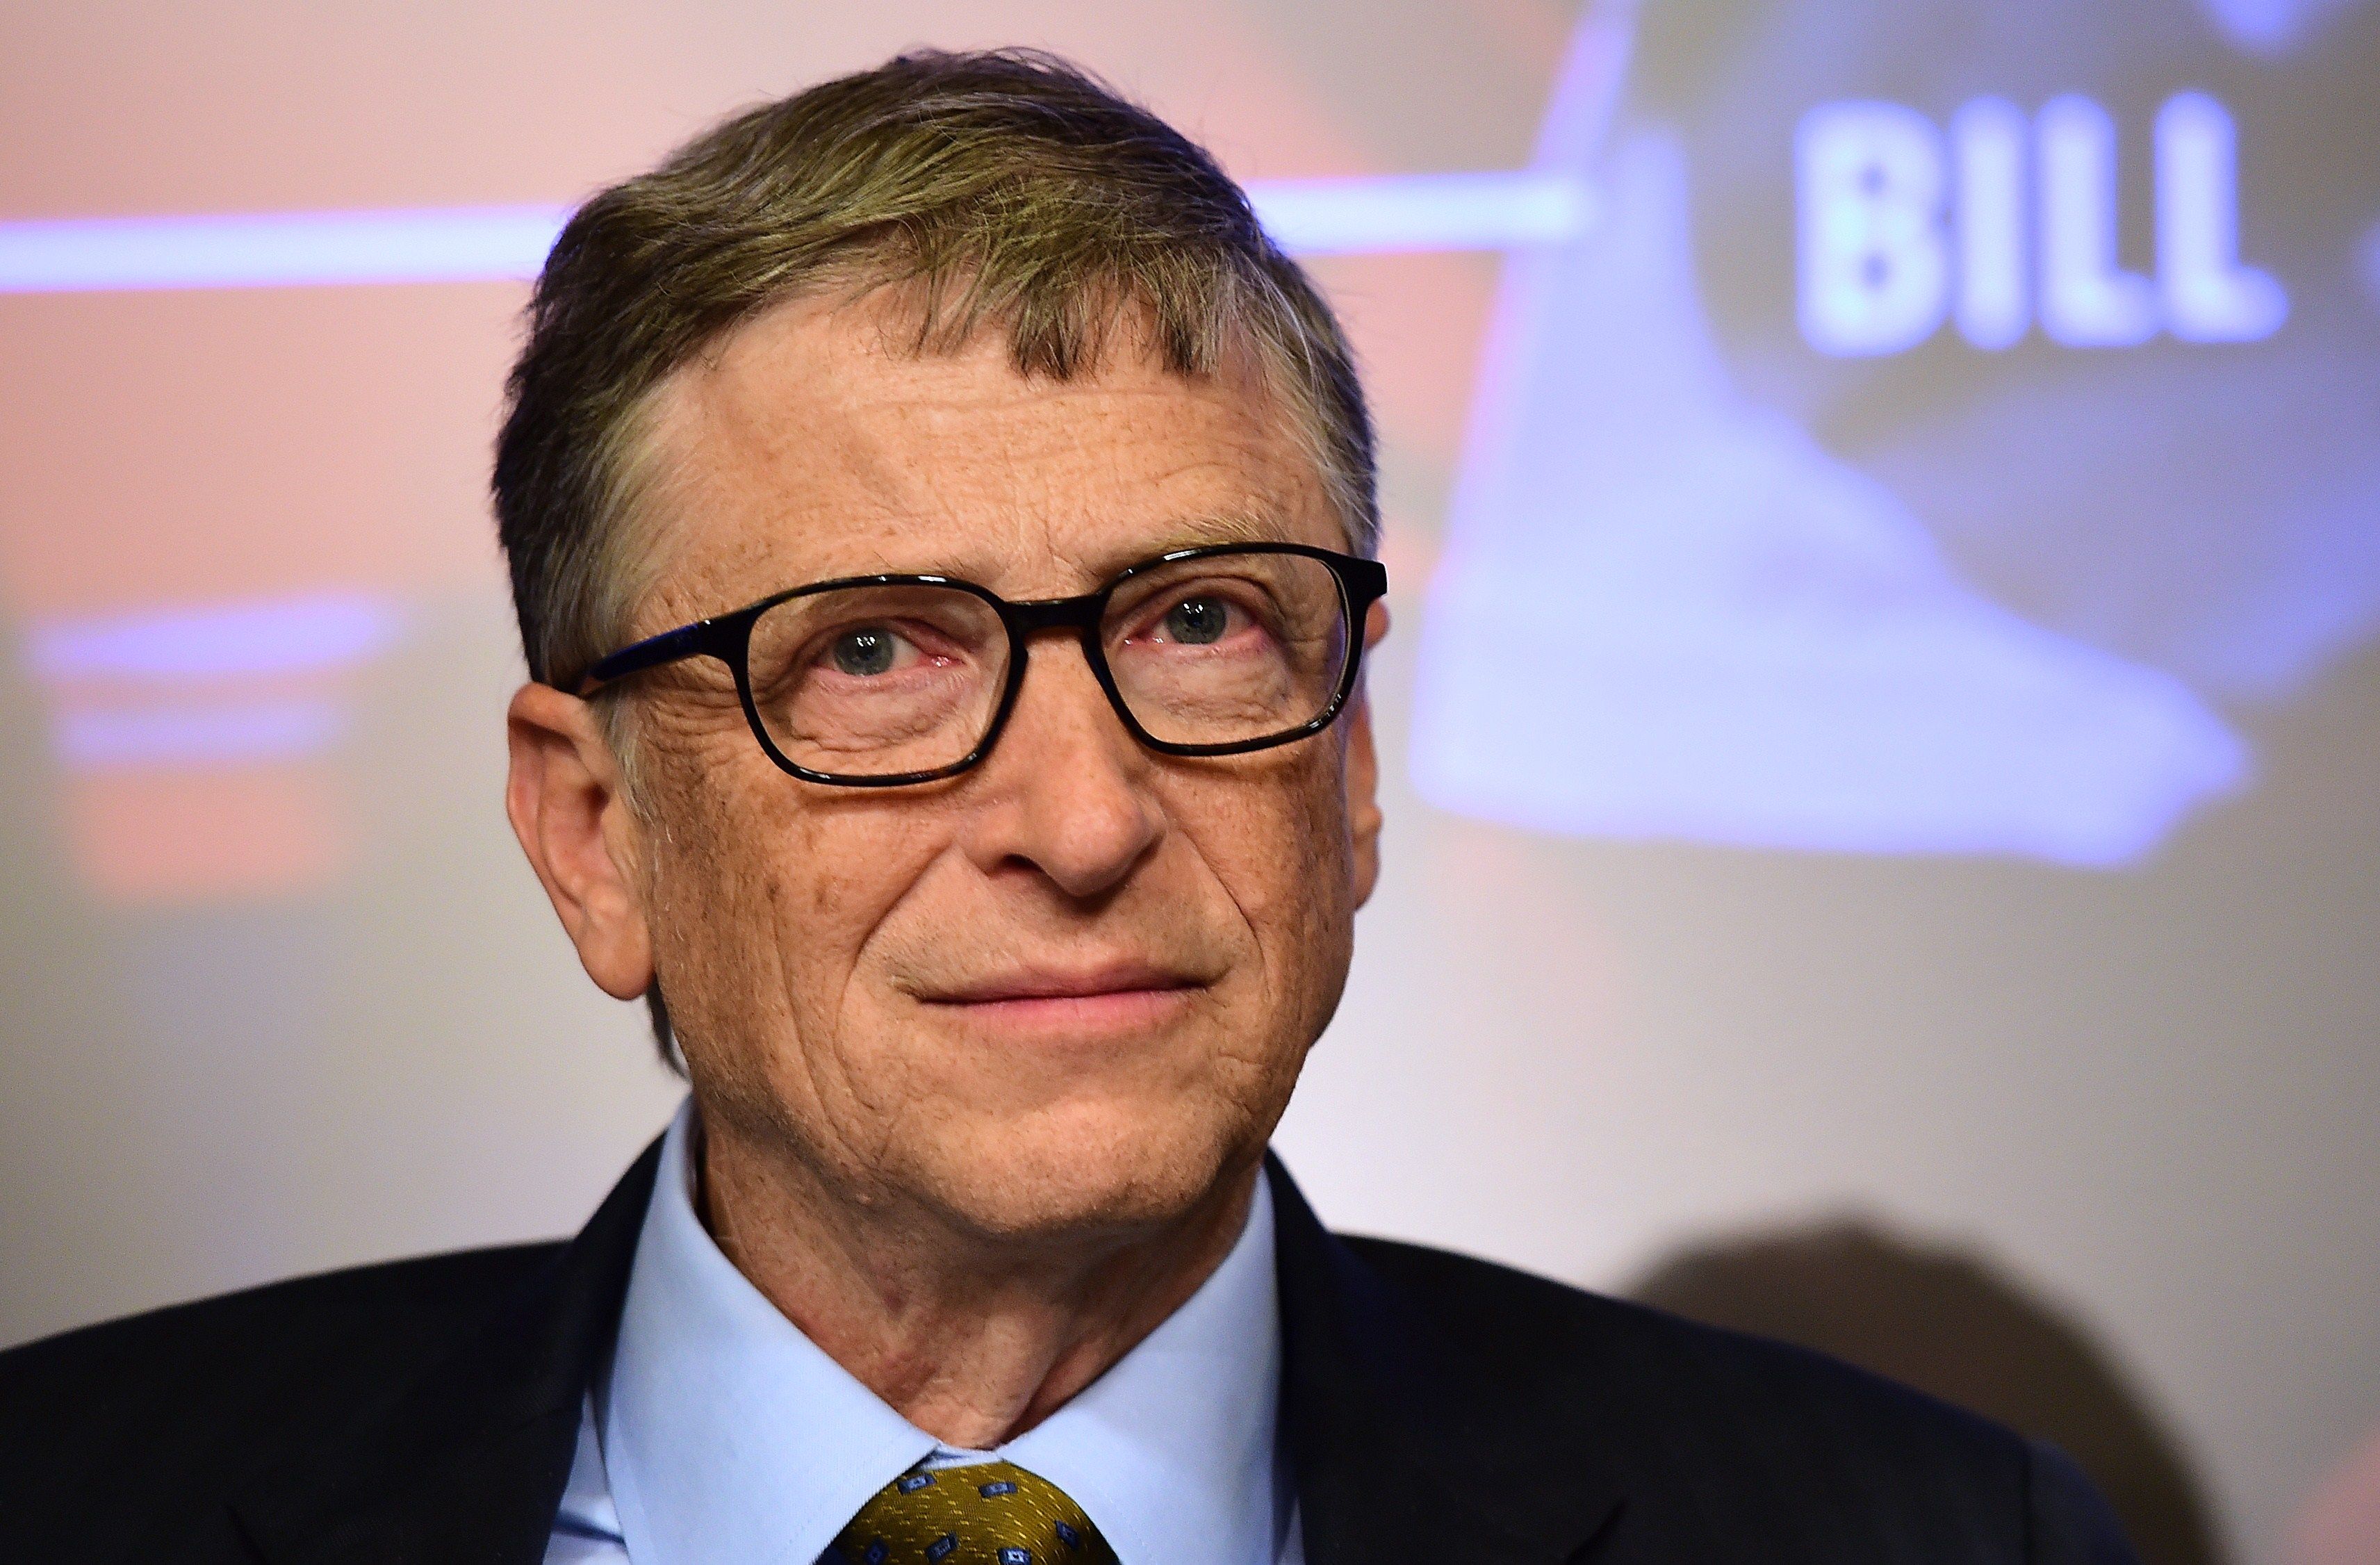 Salta per l'alegria! Bill Gates confirma l'existència de la 'Trampoline Room' a la seva casa